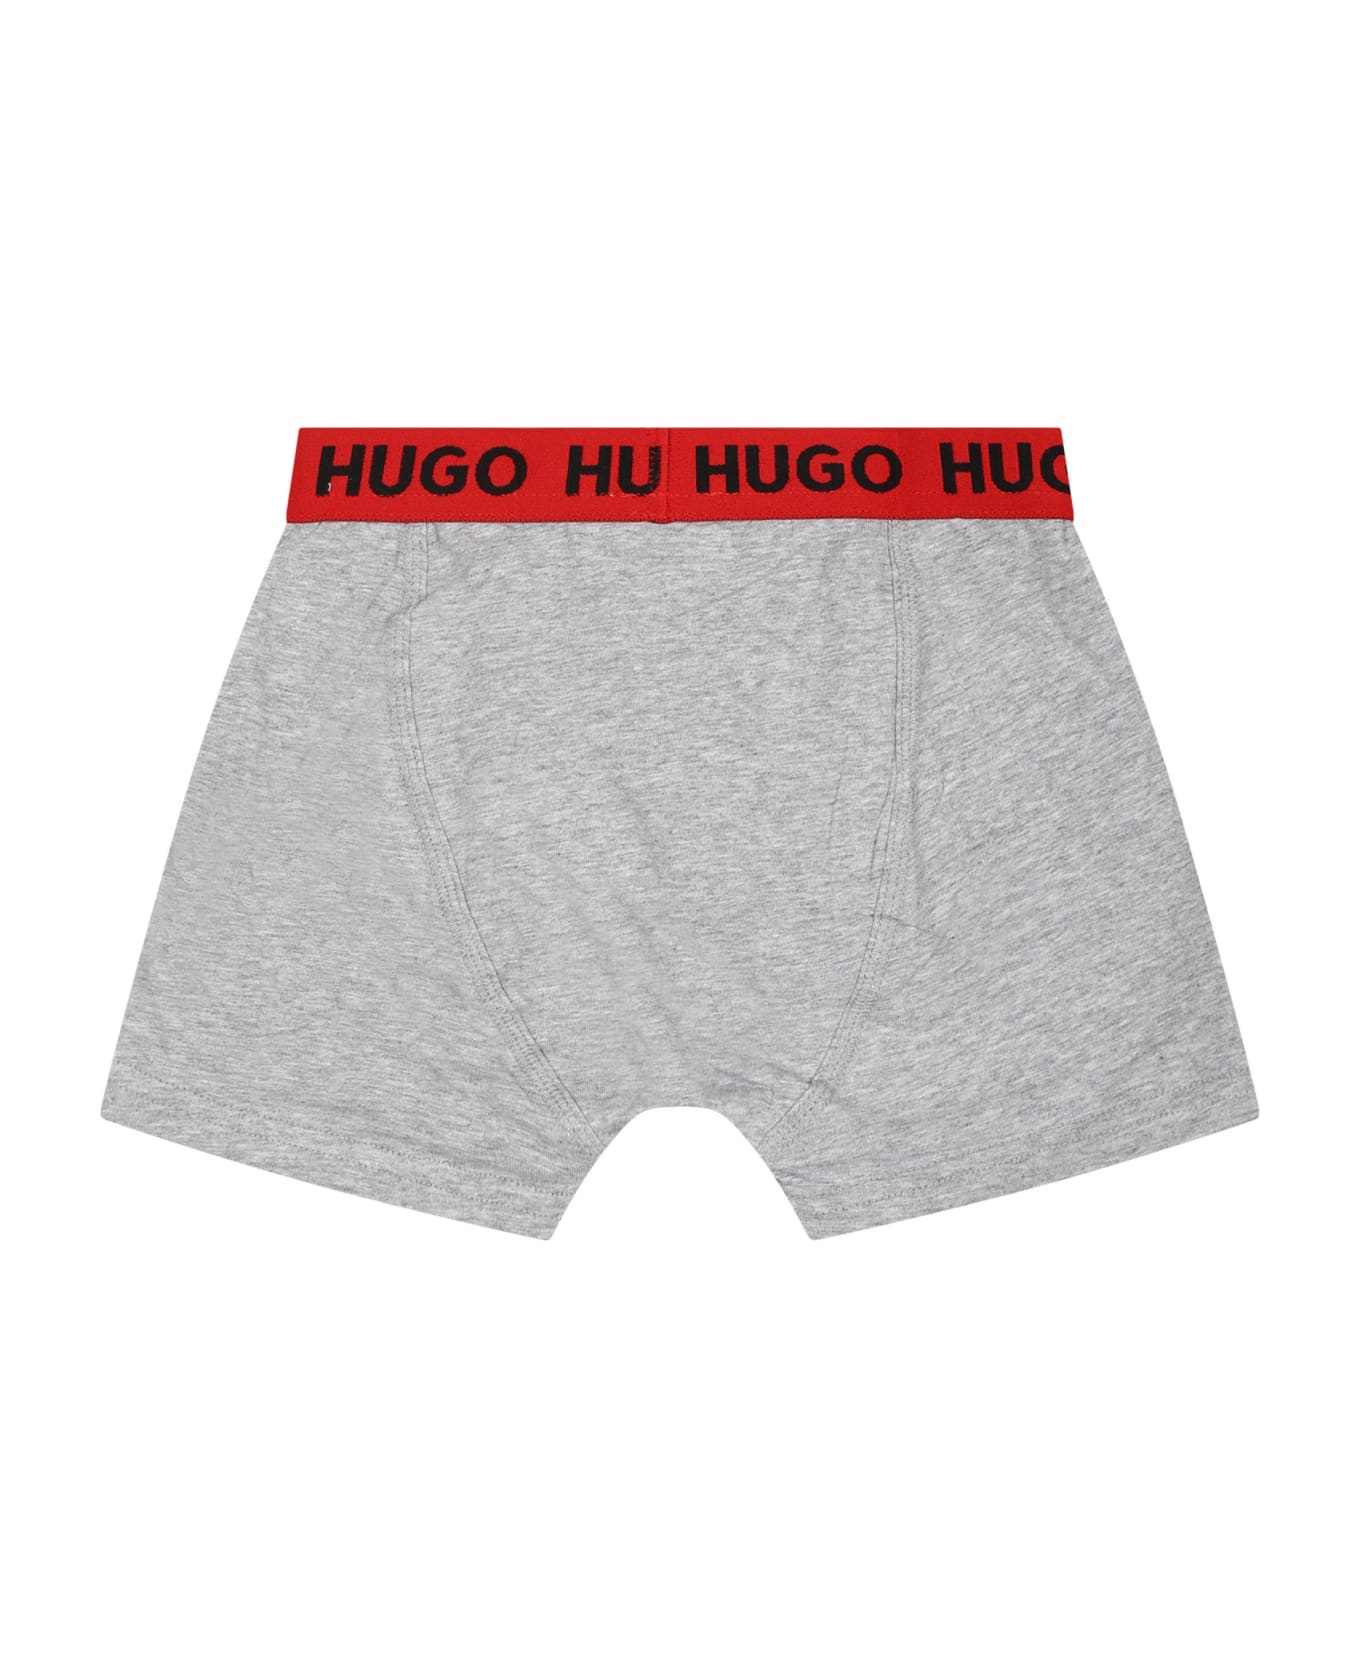 Hugo Boss Multicolor Set For Boy With Logo - Multicolor